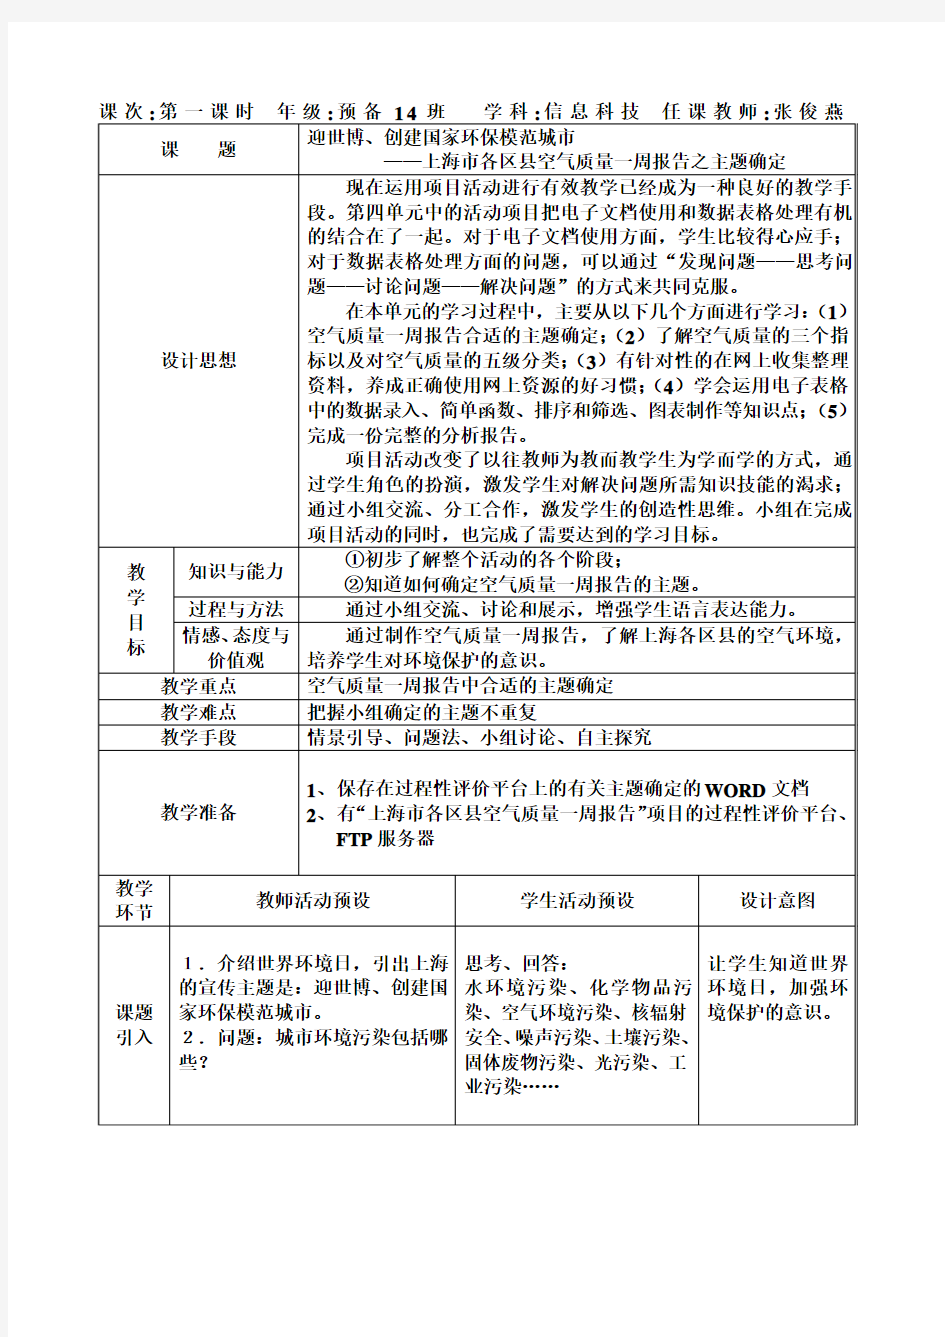 上海市各区县空气质量一周报告之主题确定